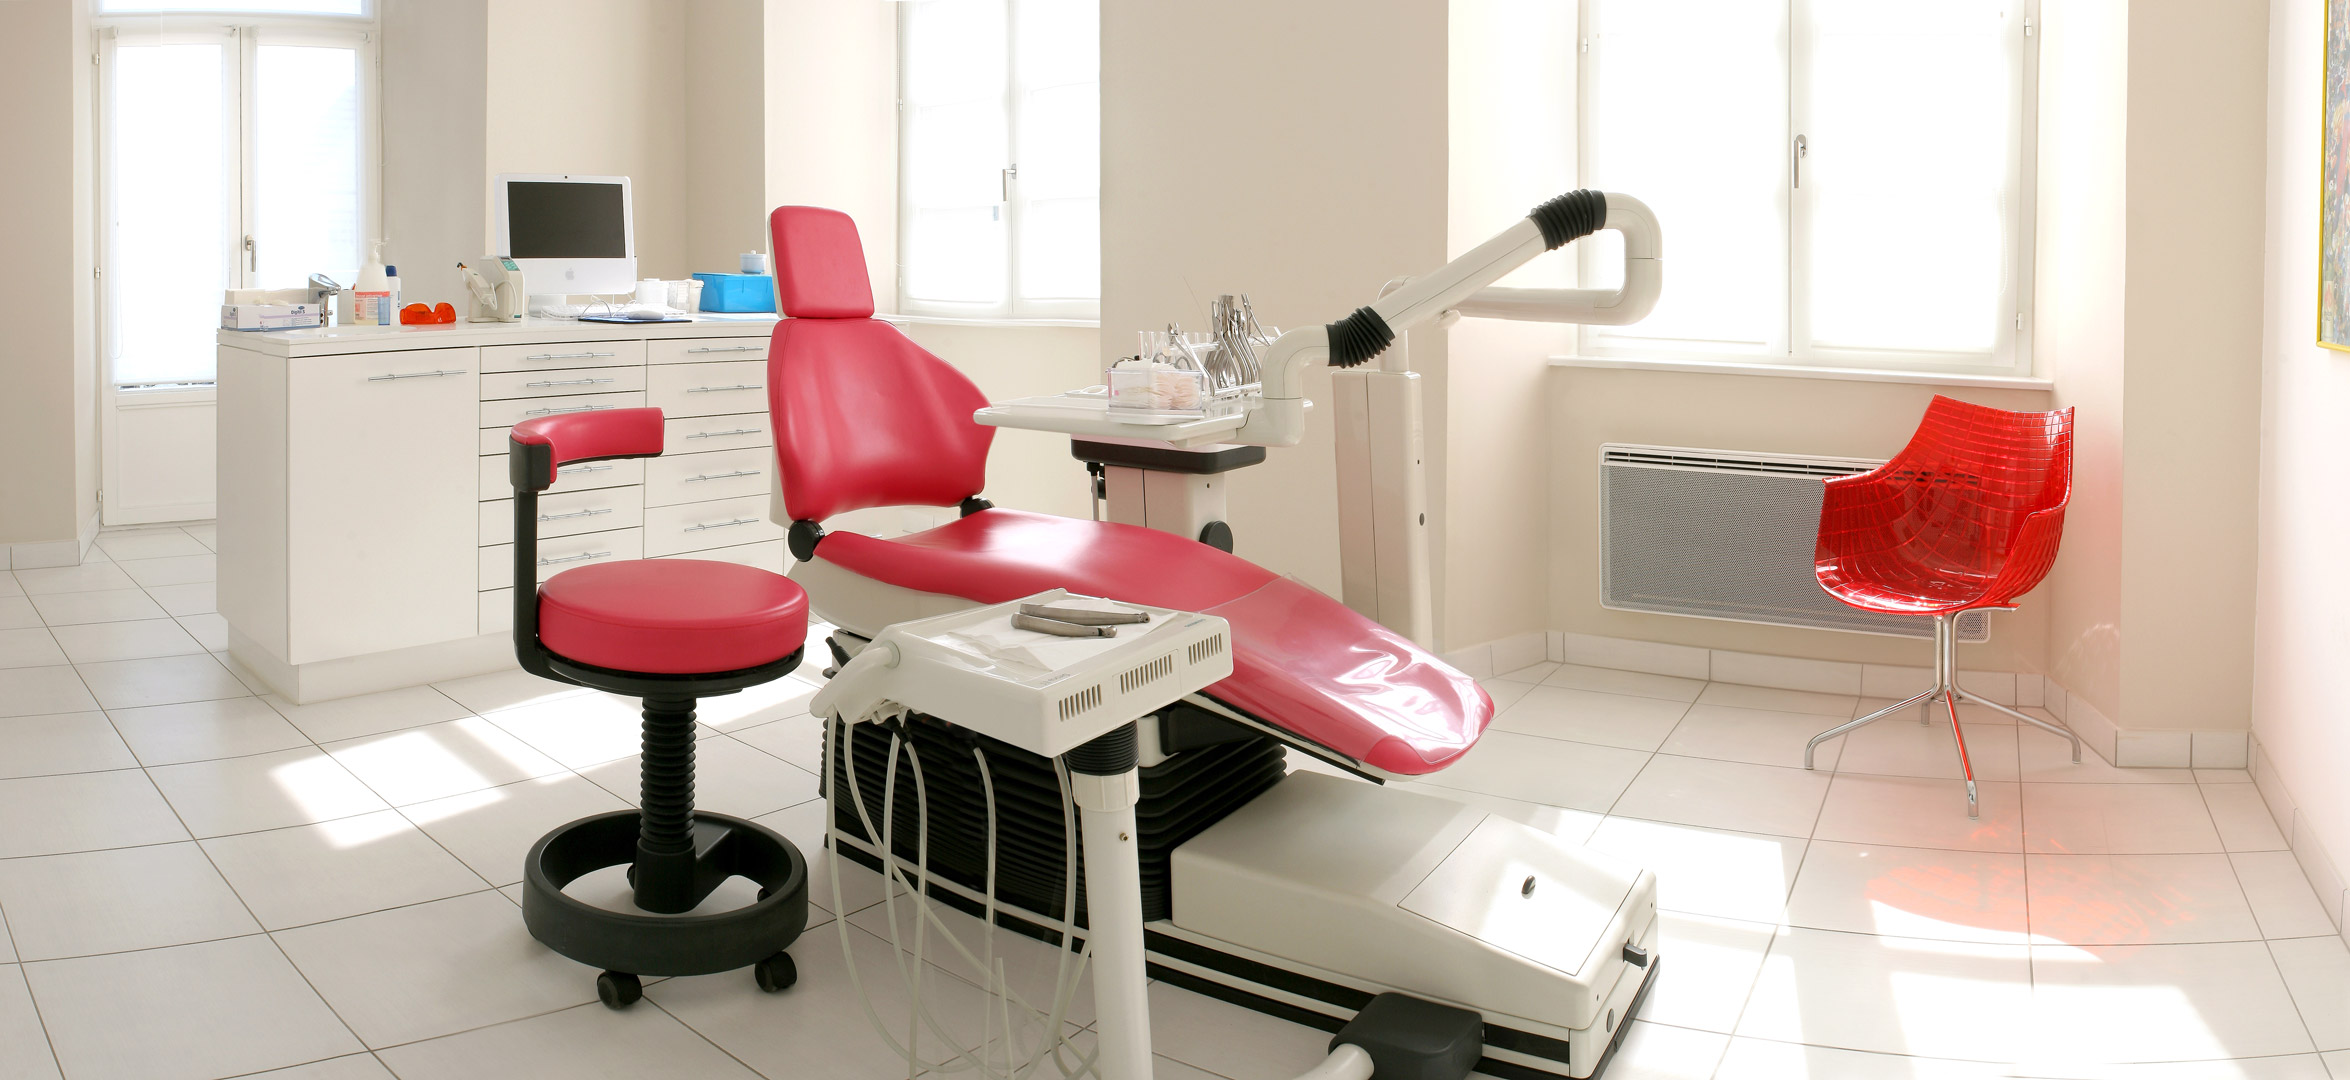 Complexe d'orthodontie à Haguenau - Présentation de lieux - Décoration d'intérieur